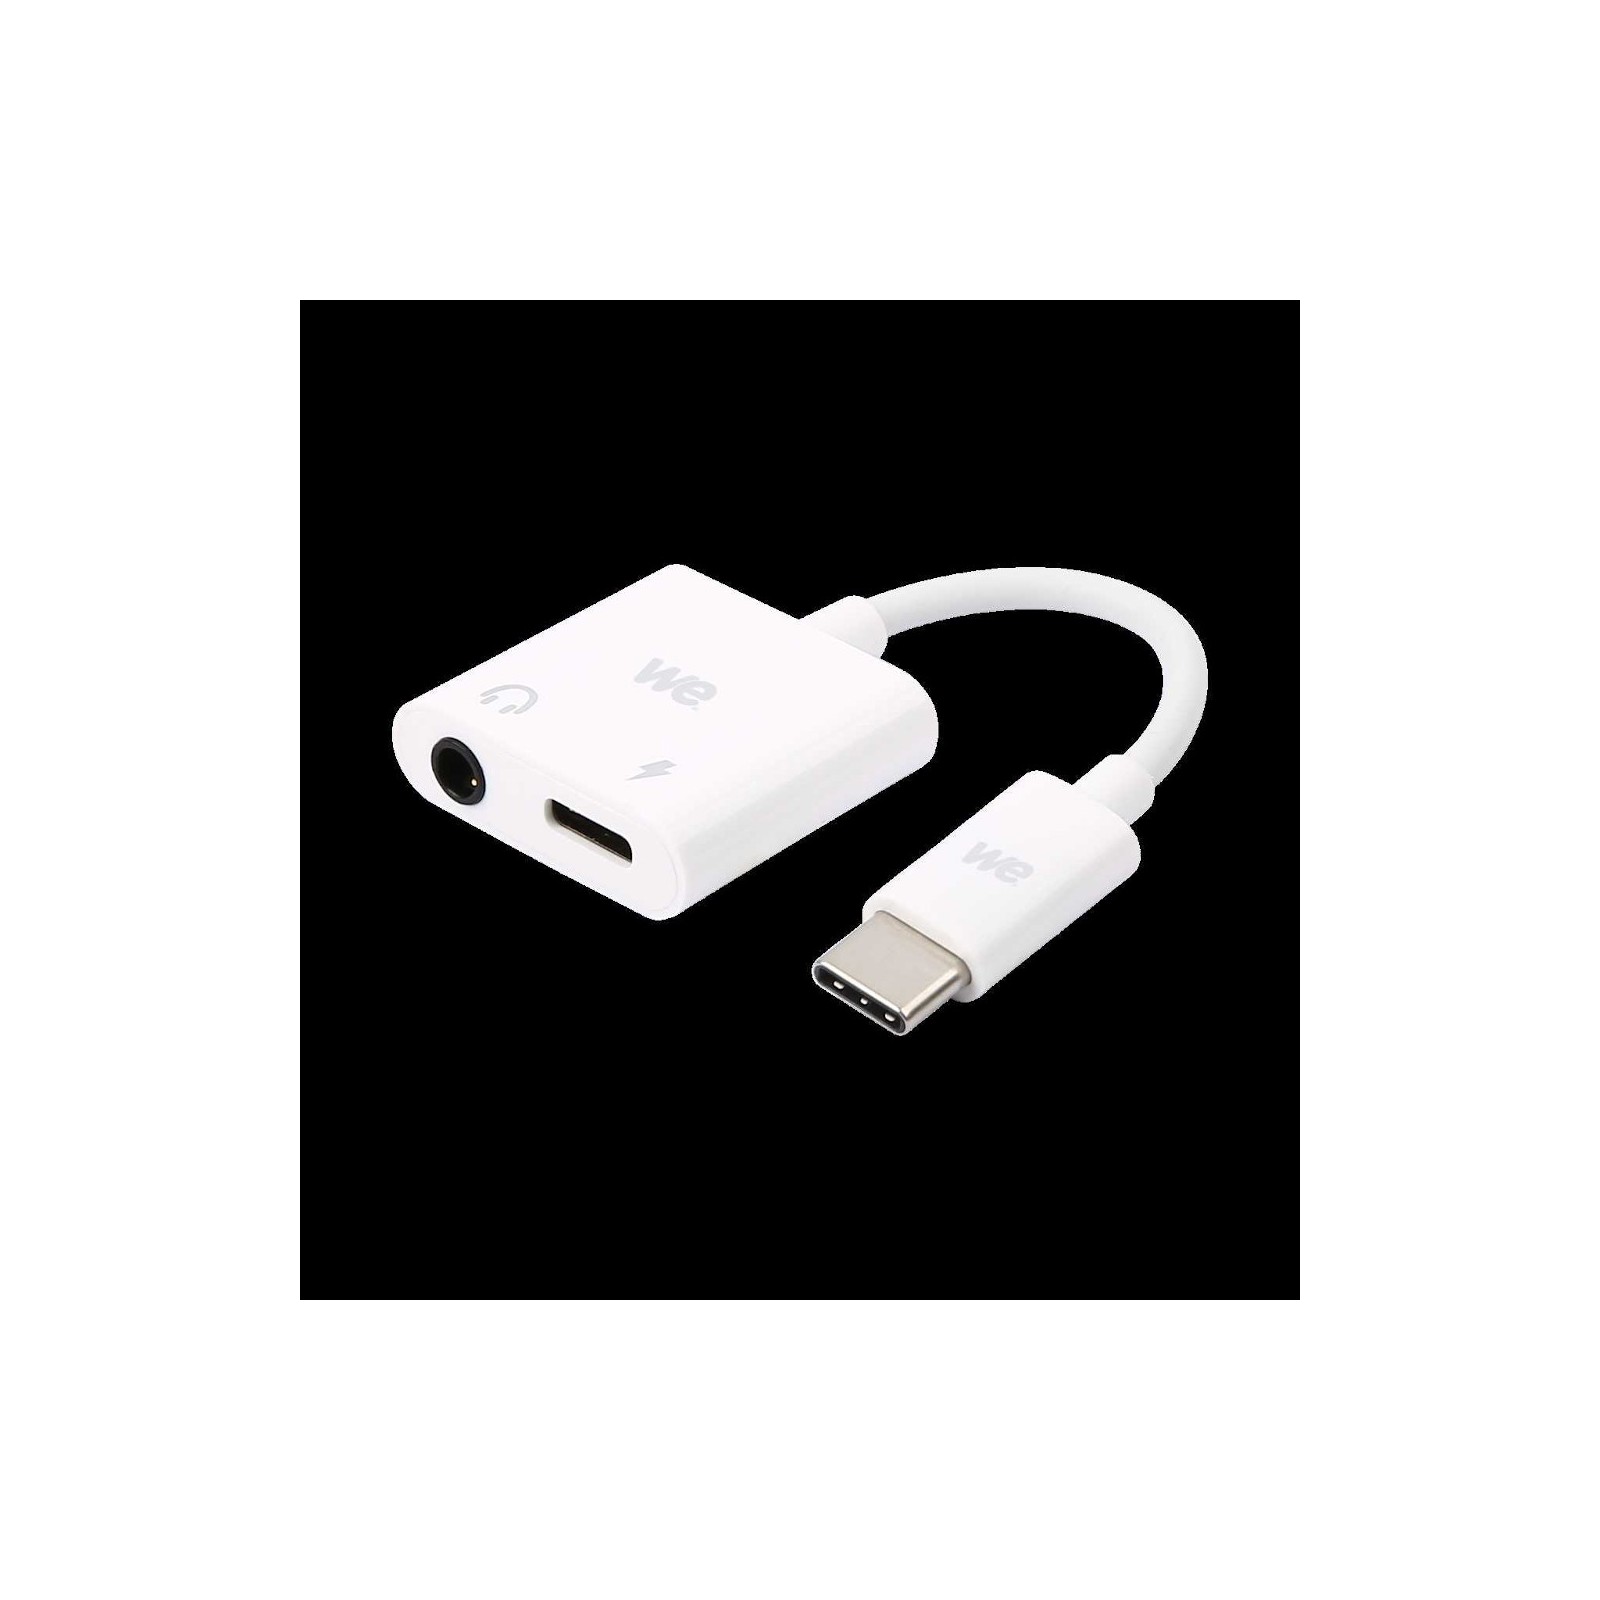 WE Adaptateur USB C vers USB C et Jack femelle 3,5mm, adaptateur 2 en 1  charge et audio spécialement conçu pour appareils en